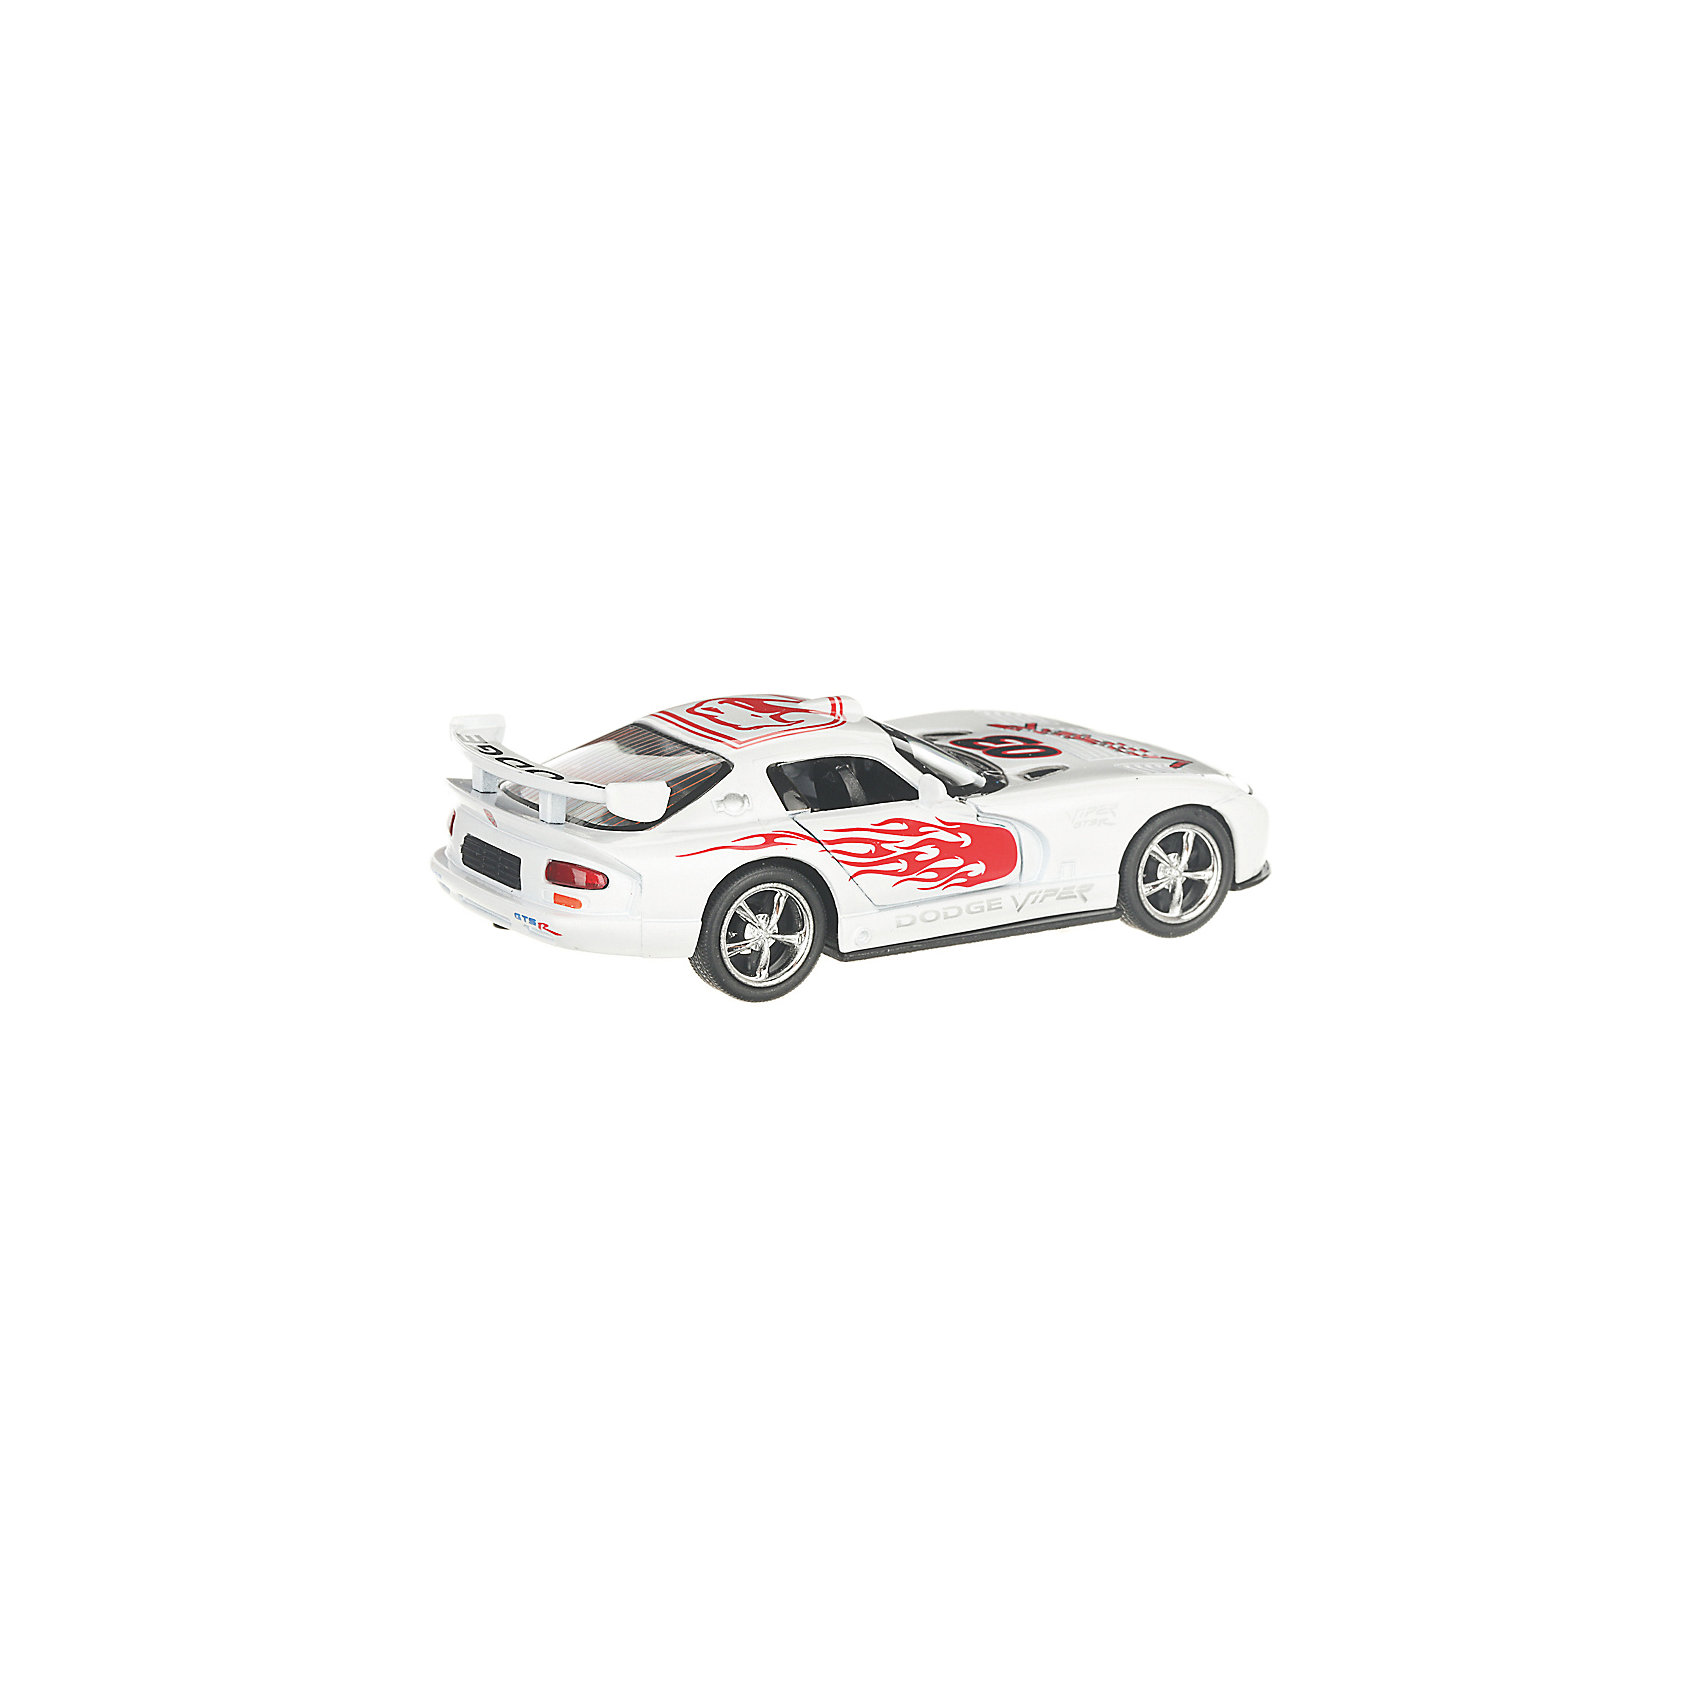 Коллекционная машинка Dodge Viper раскрашенный, белая Serinity Toys 13232999